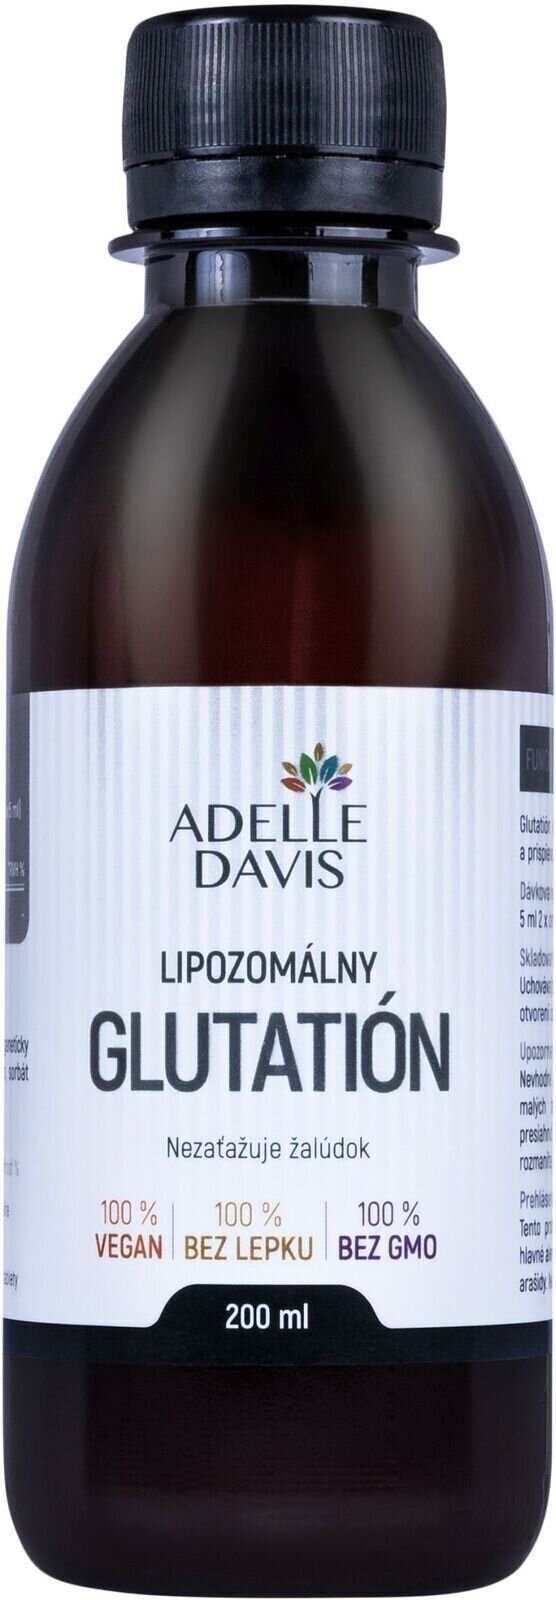 Antioxidantien und natürliche Extrakte Adelle Davis Liposomal Glutathion 200 ml Antioxidantien und natürliche Extrakte